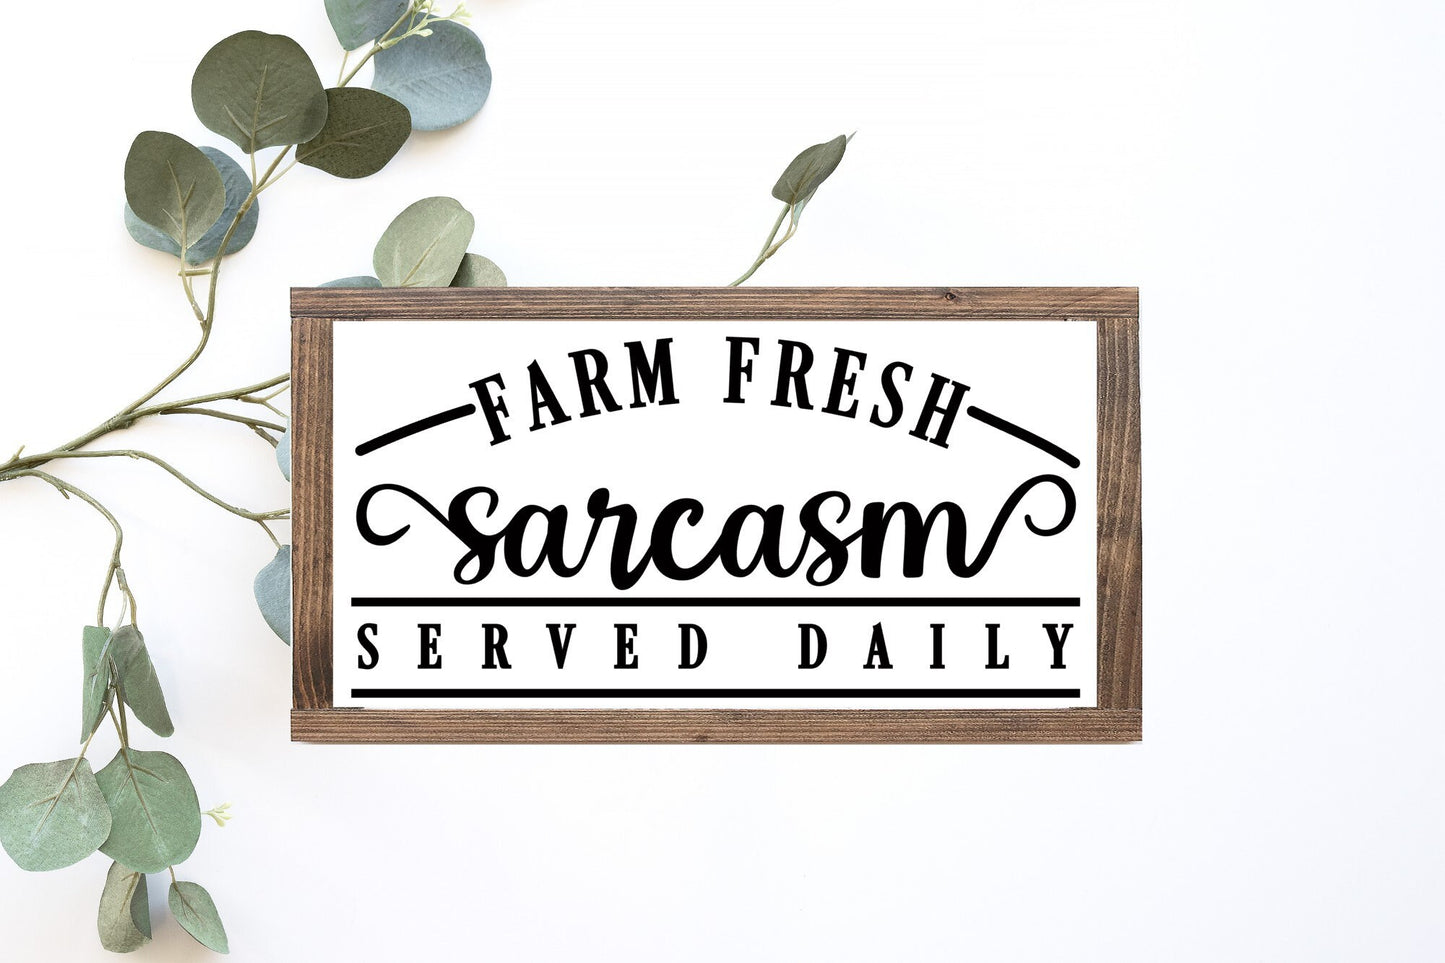 Farm Fresh Sarcasm Served Daily Wood Sign